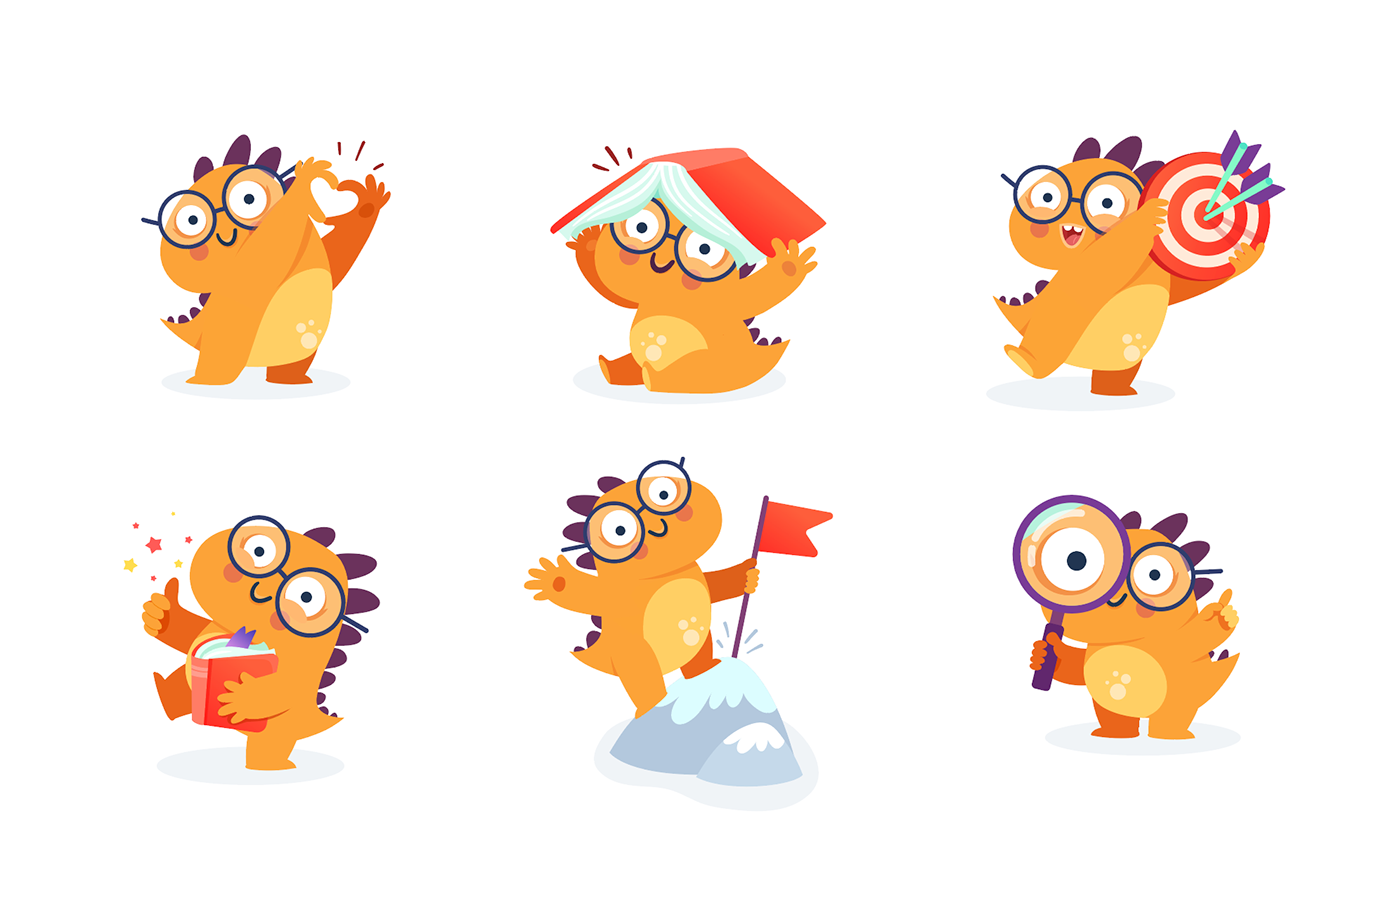 Dinosaur Dino orange Character Mobile app Character design  read Reading kids children